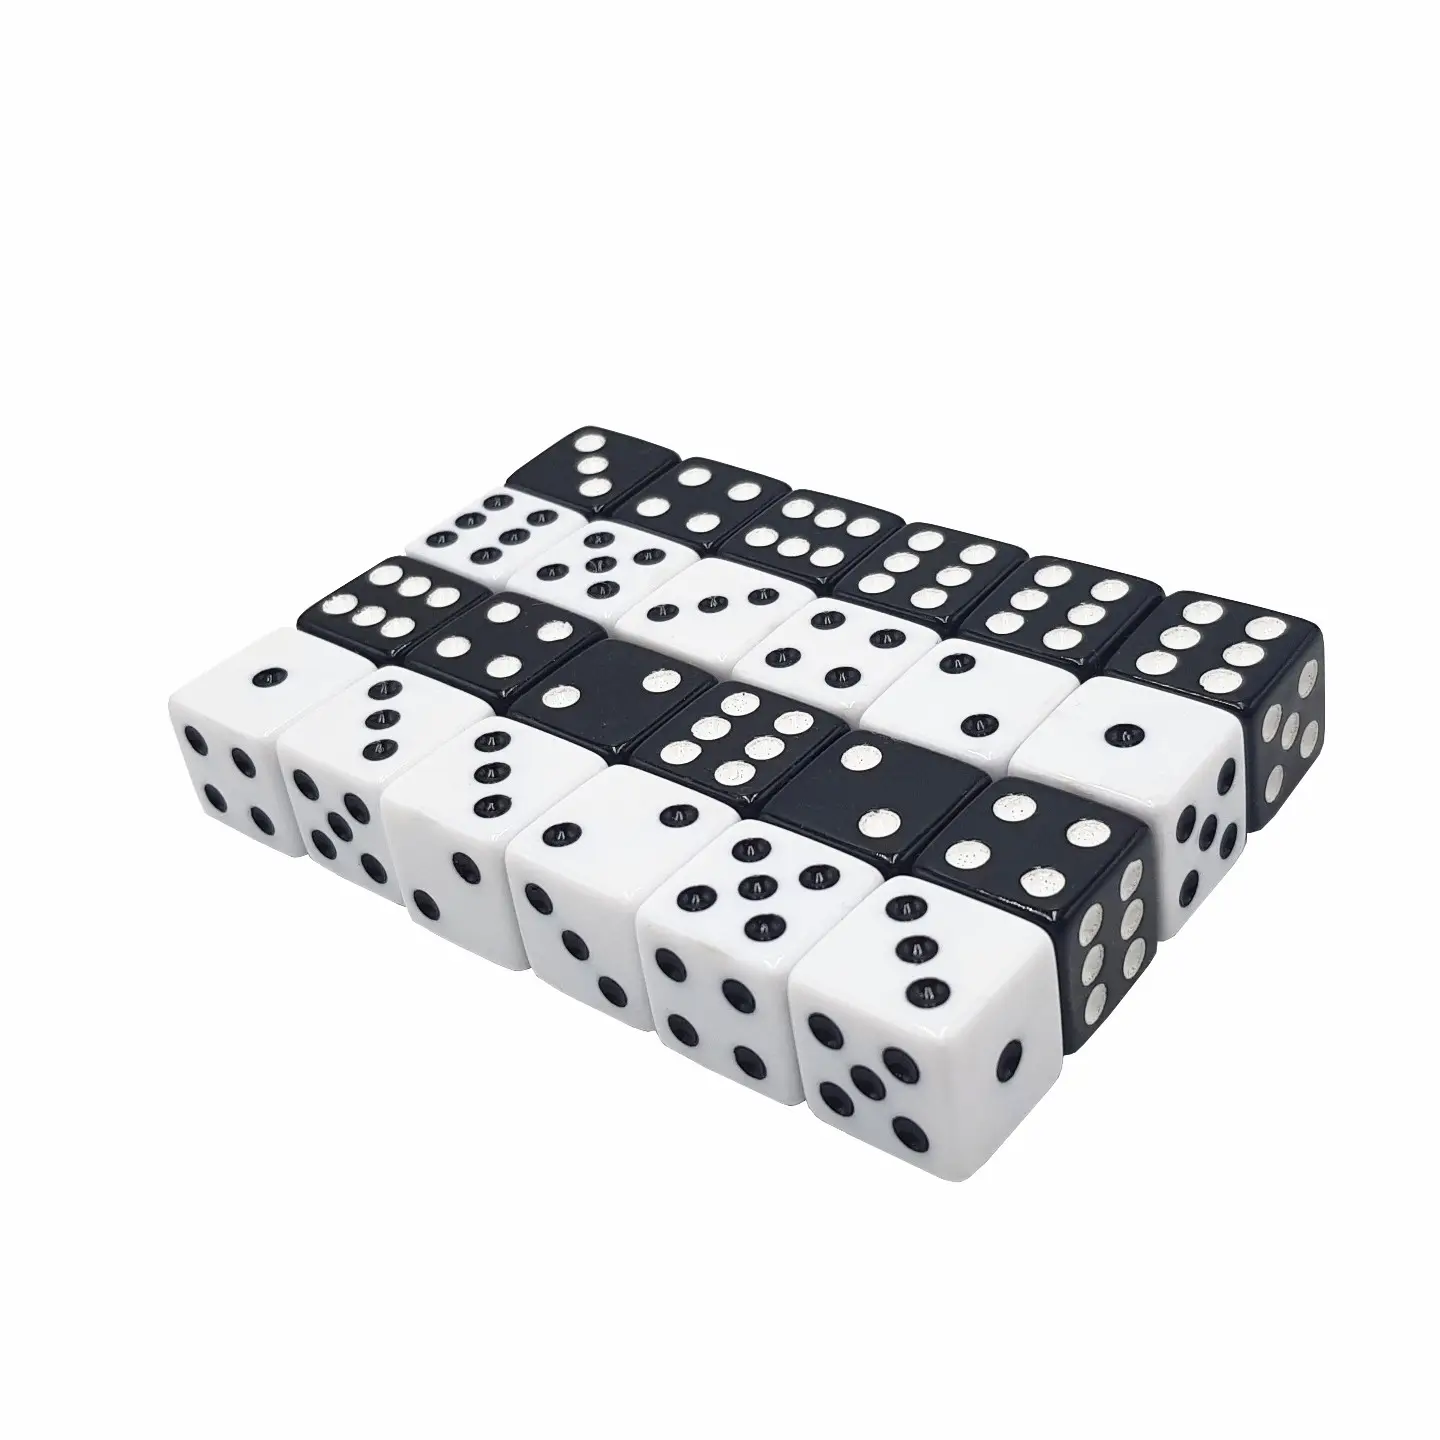 16 millimetri D6 quadrato bianco dadi con puntini neri su misura acrilico poliedrici casino gioco di dadi